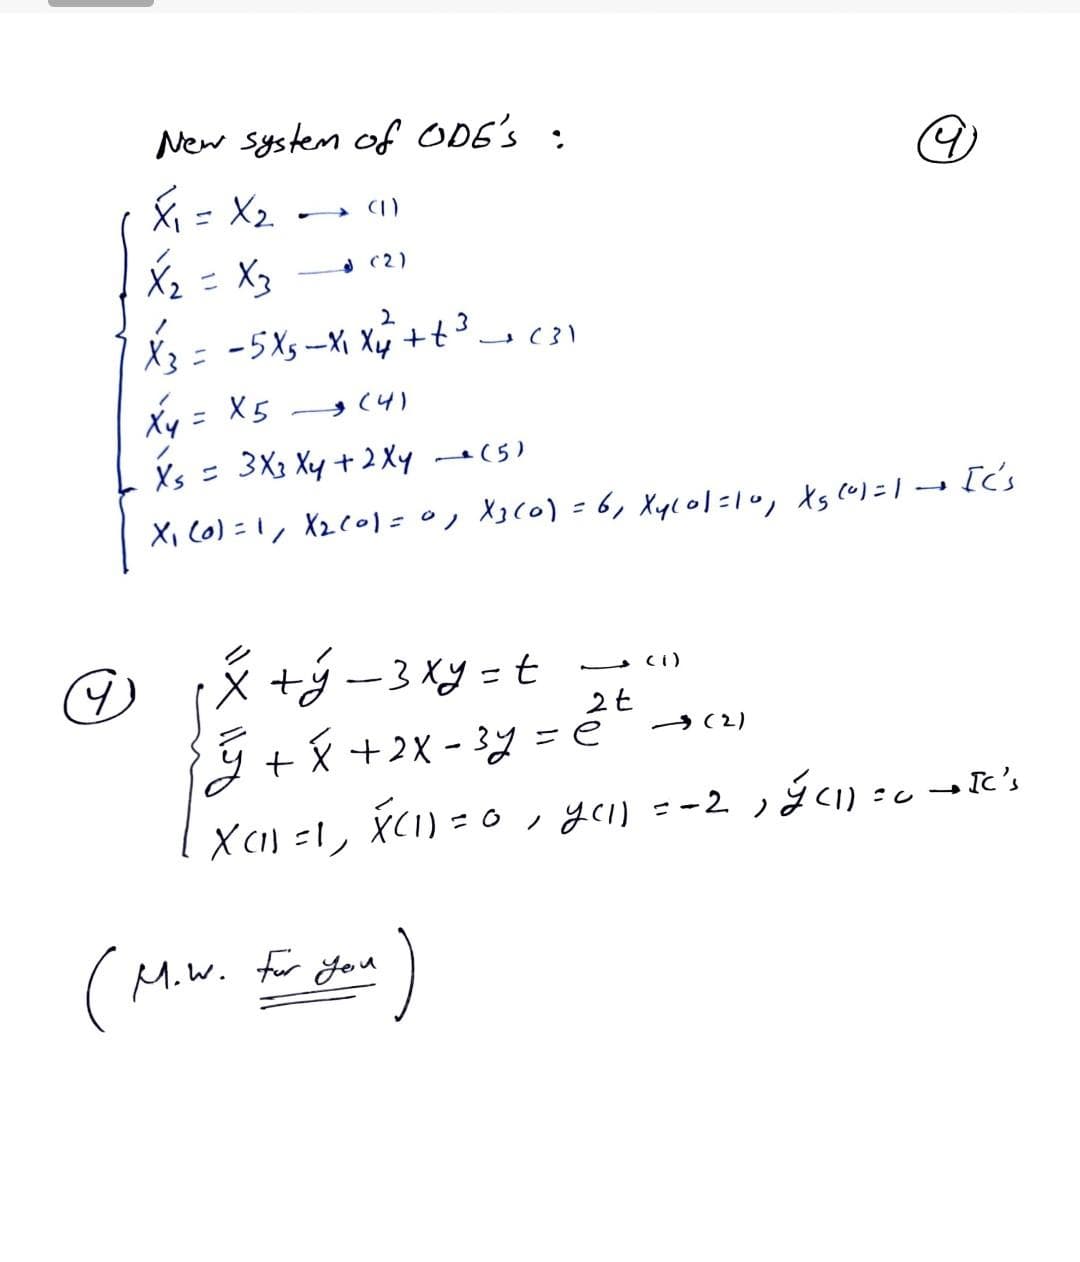 New system of ODE's :
X = X2.
A (1)
X2= X3
A (2)
X3= -5X5-X Xy +t3c
Xy = X5 (4)
Xs = 3X3 Xy + 2 Xy (5)
Xi C0) =1, X2C01=0, X3(0) - 6, Xyl01=10, ts cu)=1['s
の(メダー3y=t
→ (2)
Ý +X +2X - 3y = é
X () =!, X(I) = 0, yel =-2, ýCI) = c
Miw.
for you
